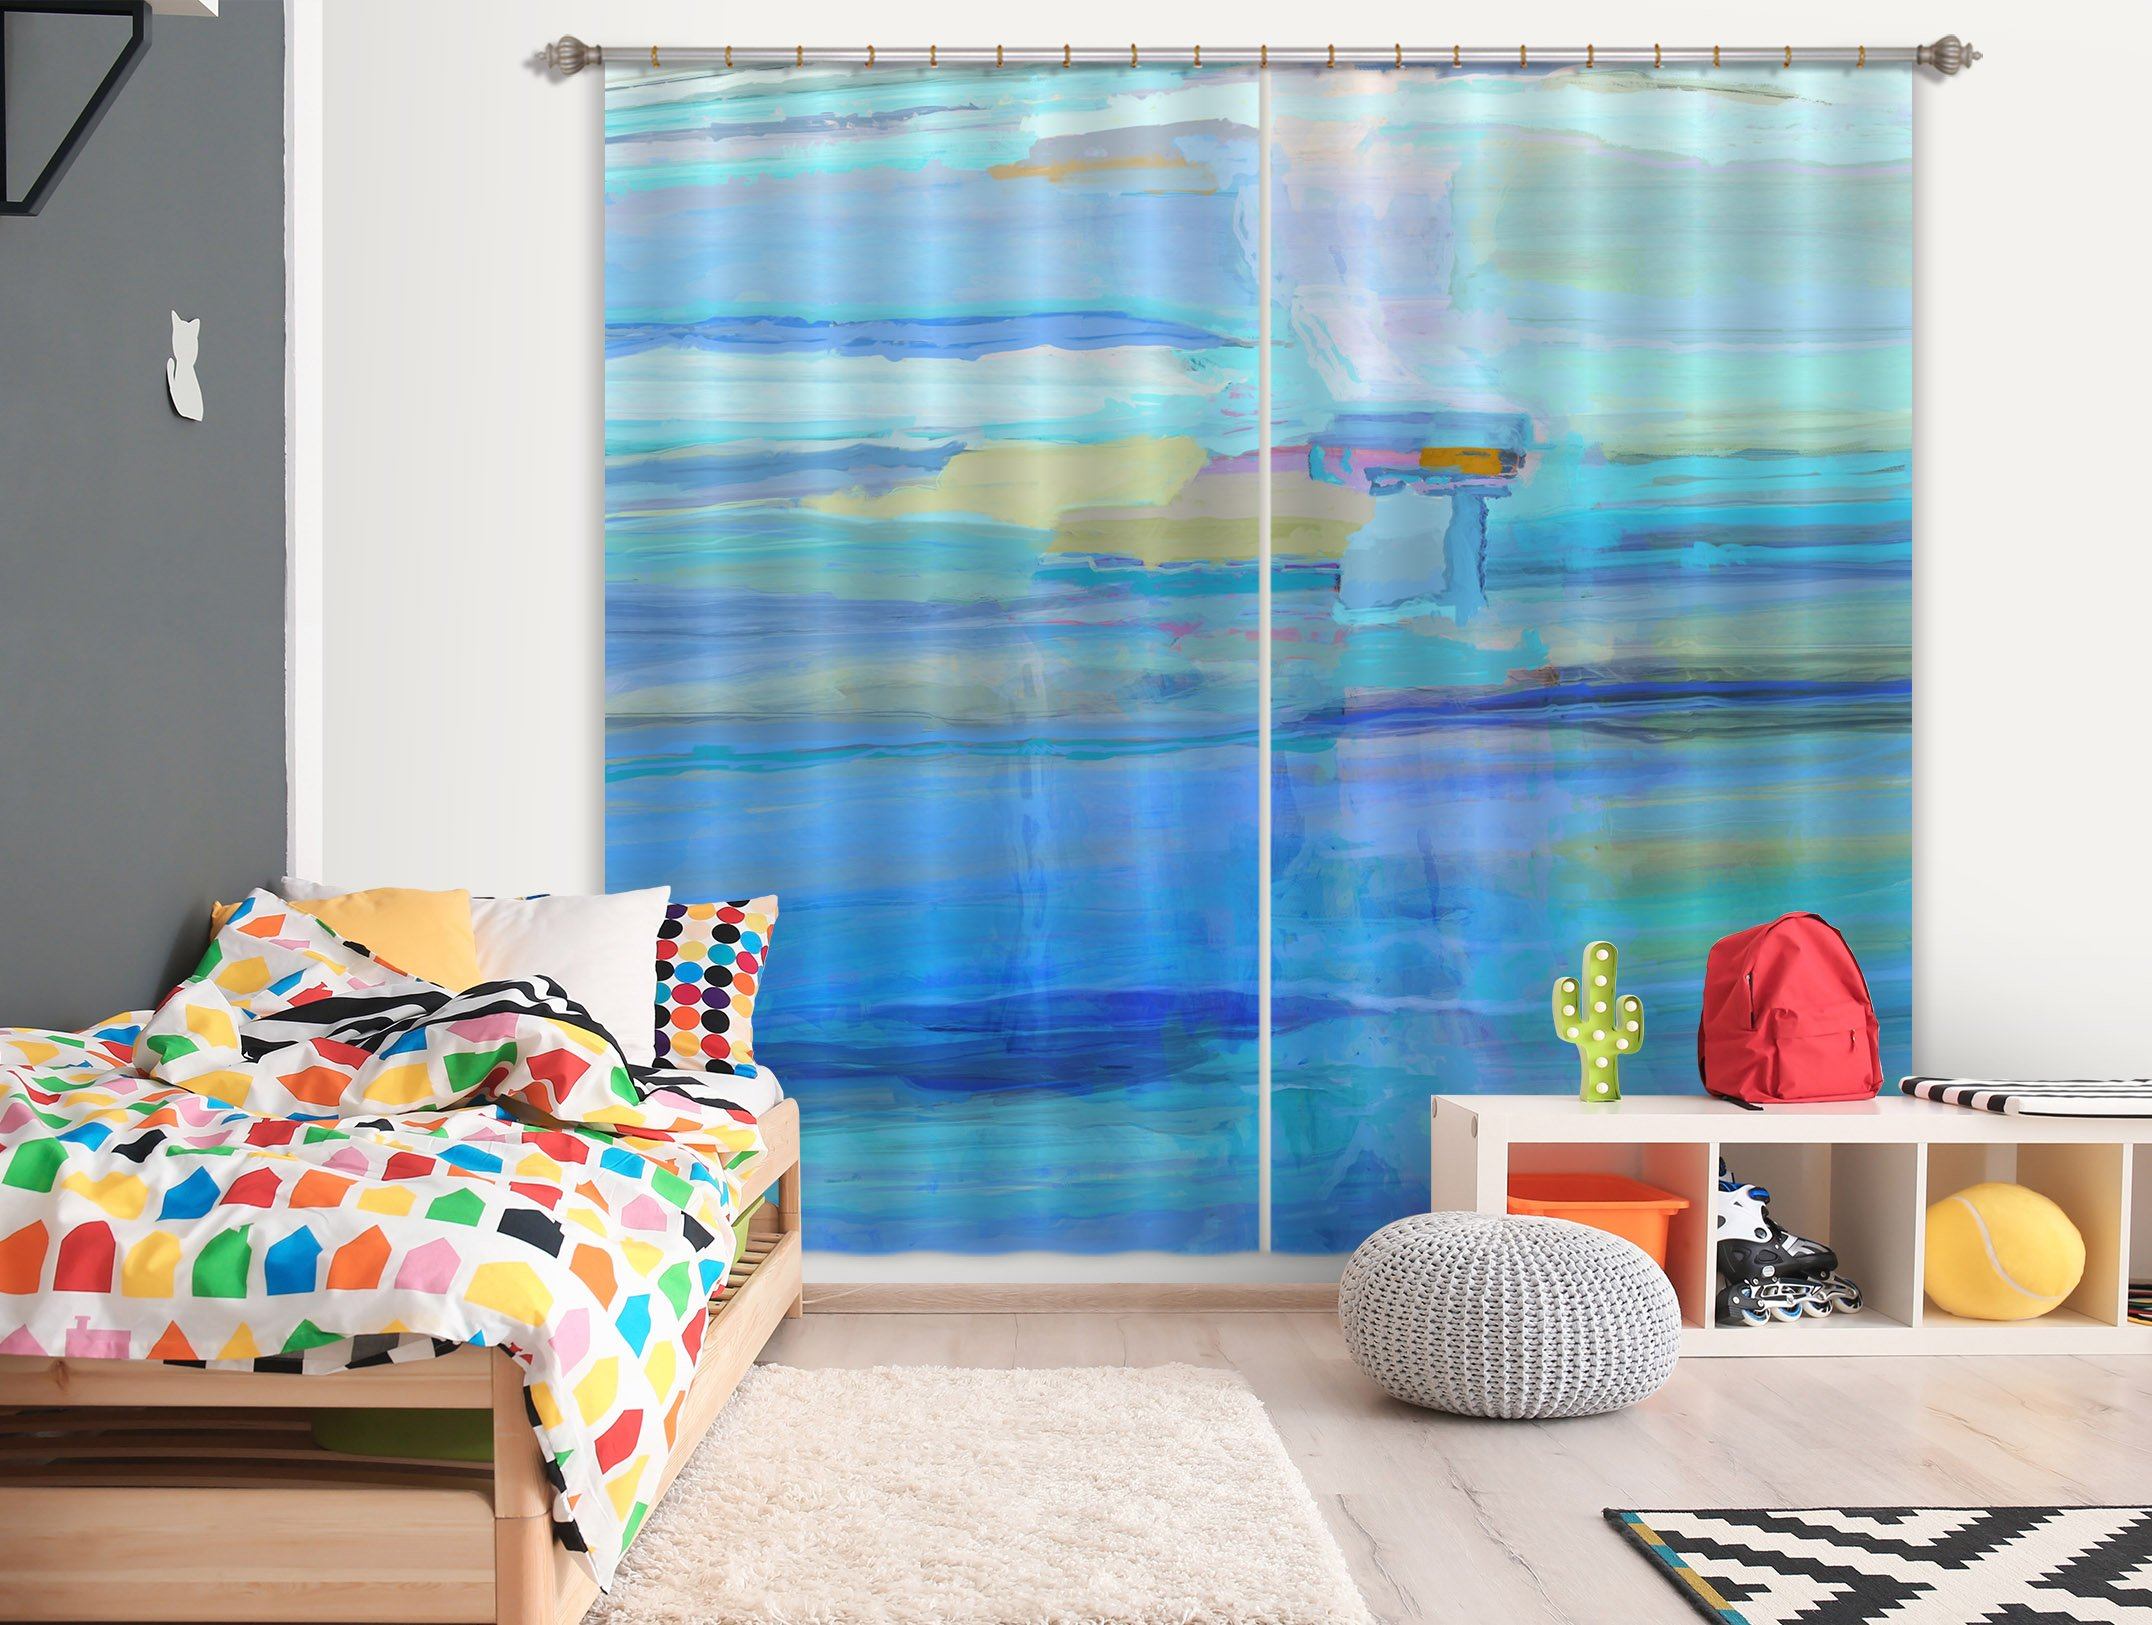 3D Blue Sea 046 Michael Tienhaara Curtain Curtains Drapes Curtains AJ Creativity Home 